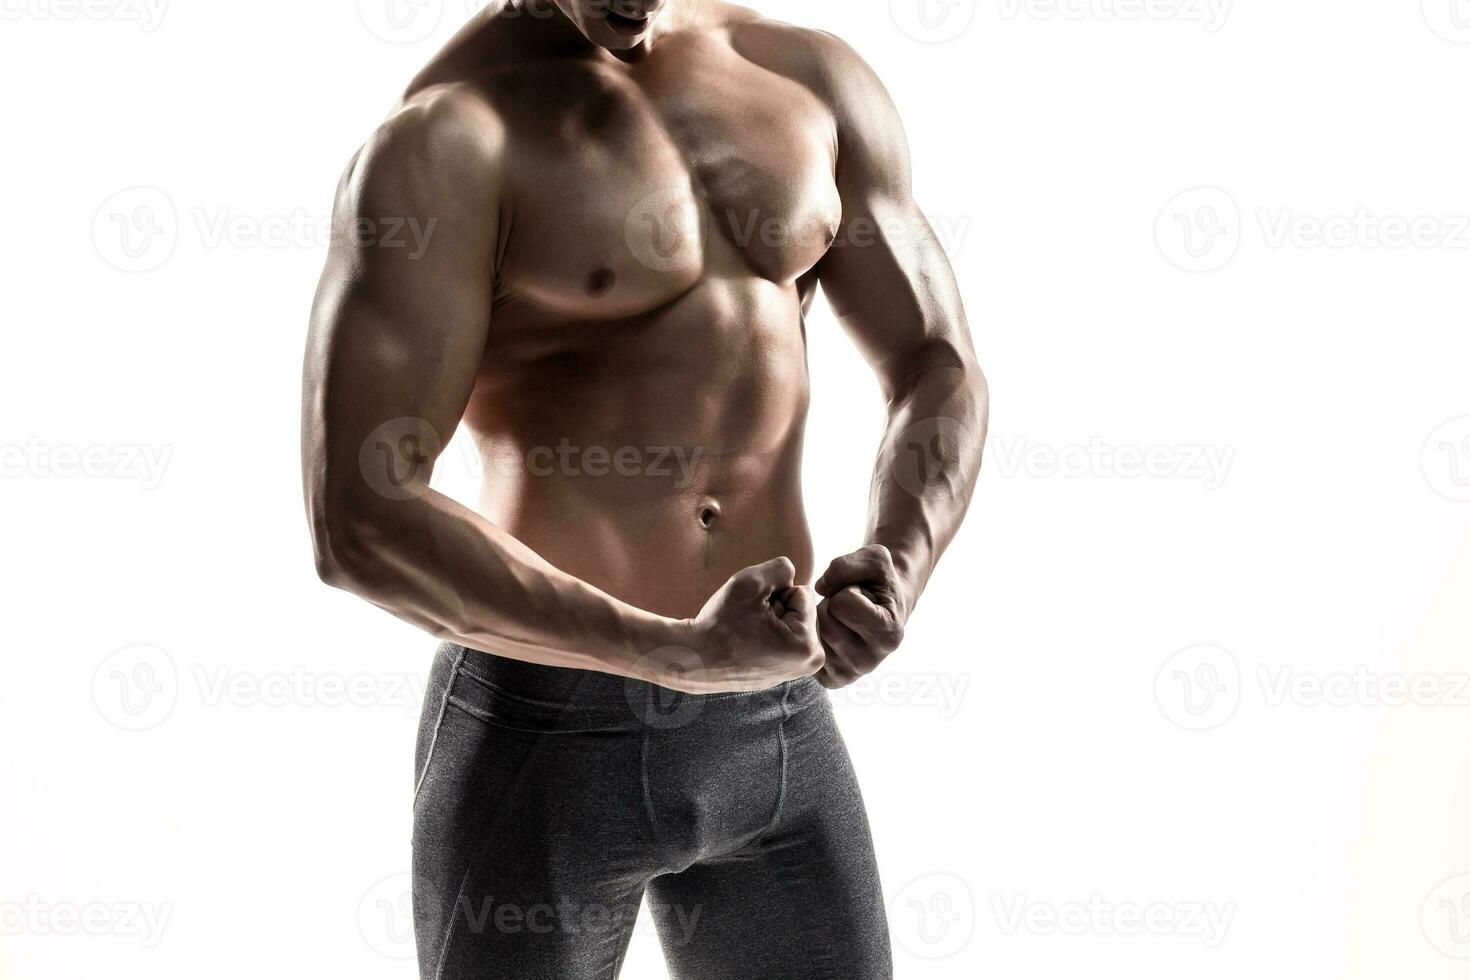 fisiculturista homem posando, mostrando perfeito abdômen, ombros, bíceps, tríceps, peito foto